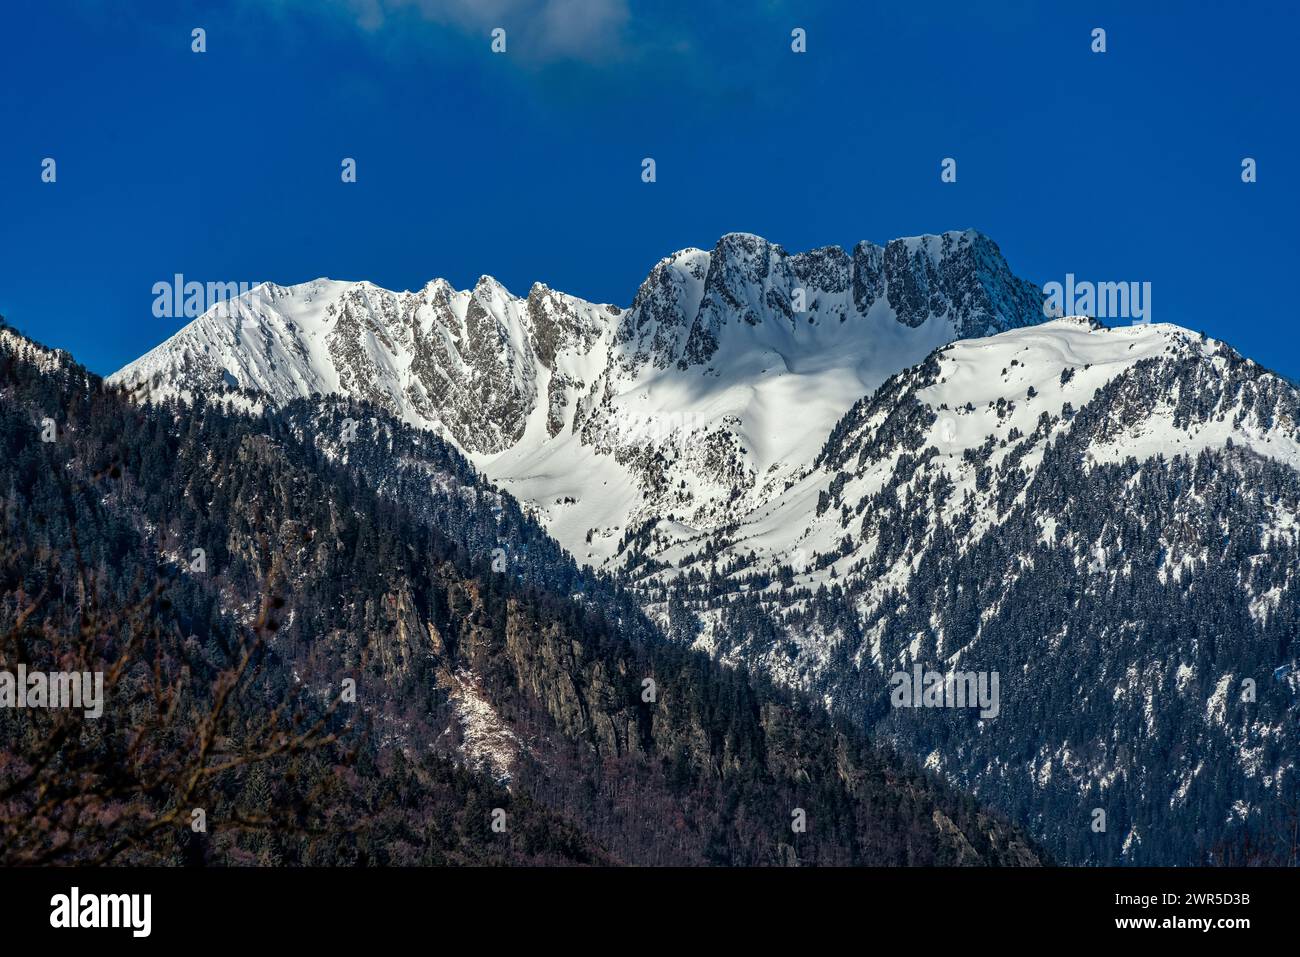 Les sommets enneigés de la chaîne de Belledonne du Dauphiné français en Savoie. Les grands Moulins, le trois Dames, le Fort. Savoie, France Banque D'Images